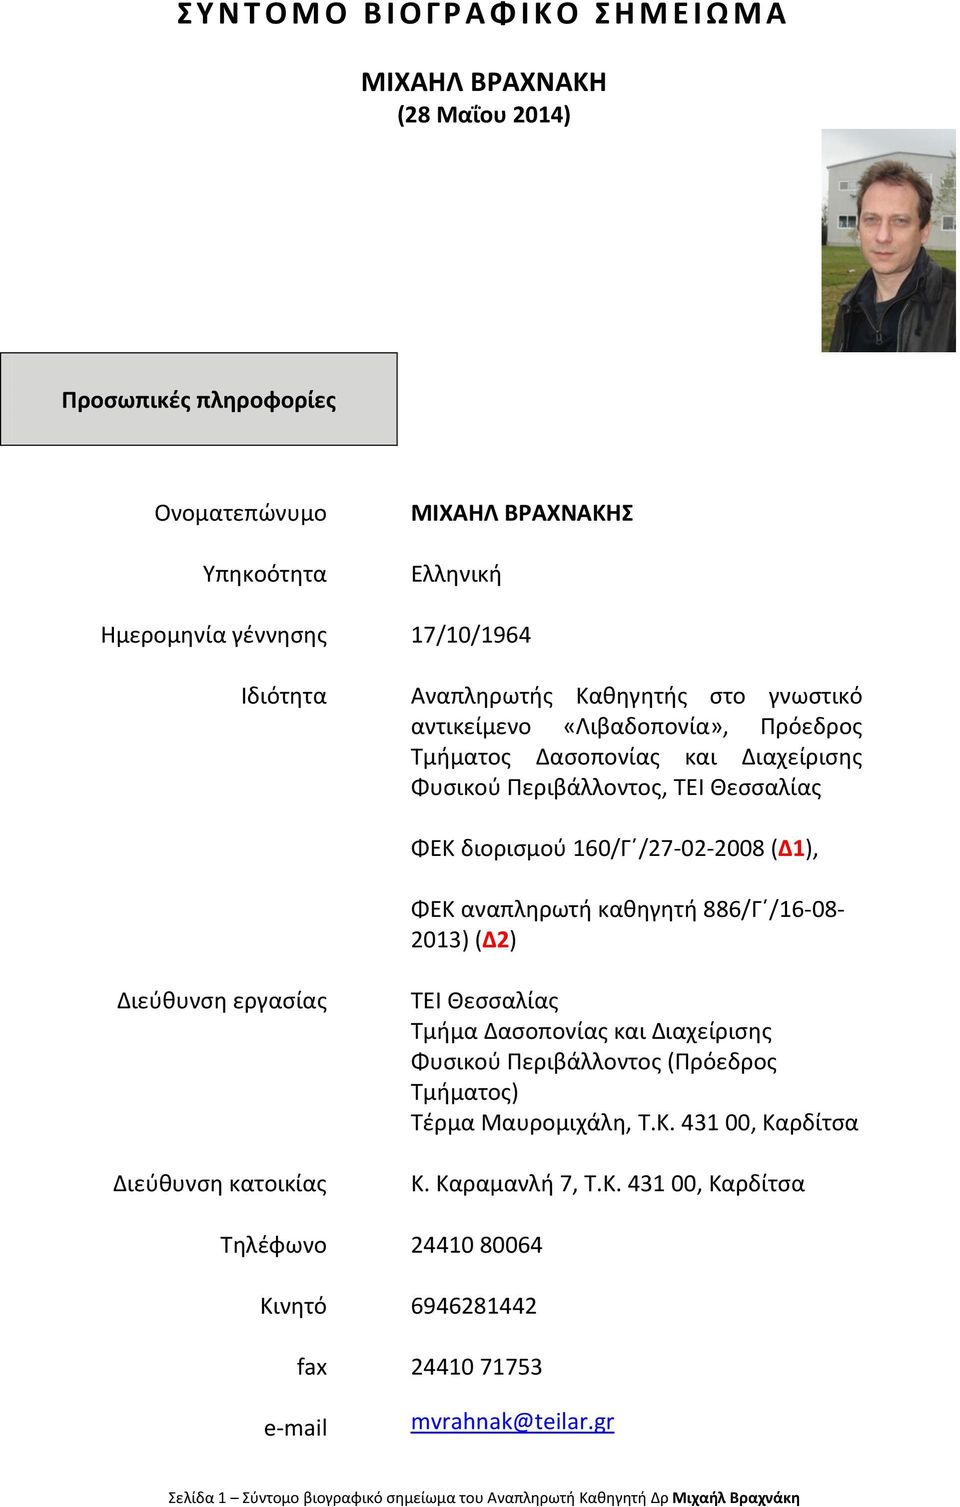 καθηγητή 886/Γ /16-08- 2013) (Δ2) Διεύθυνση εργασίας Διεύθυνση κατοικίας ΤΕΙ Θεσσαλίας Τμήμα Δασοπονίας και Διαχείρισης Φυσικού Περιβάλλοντος (Πρόεδρος Τμήματος) Τέρμα Μαυρομιχάλη, T.K.